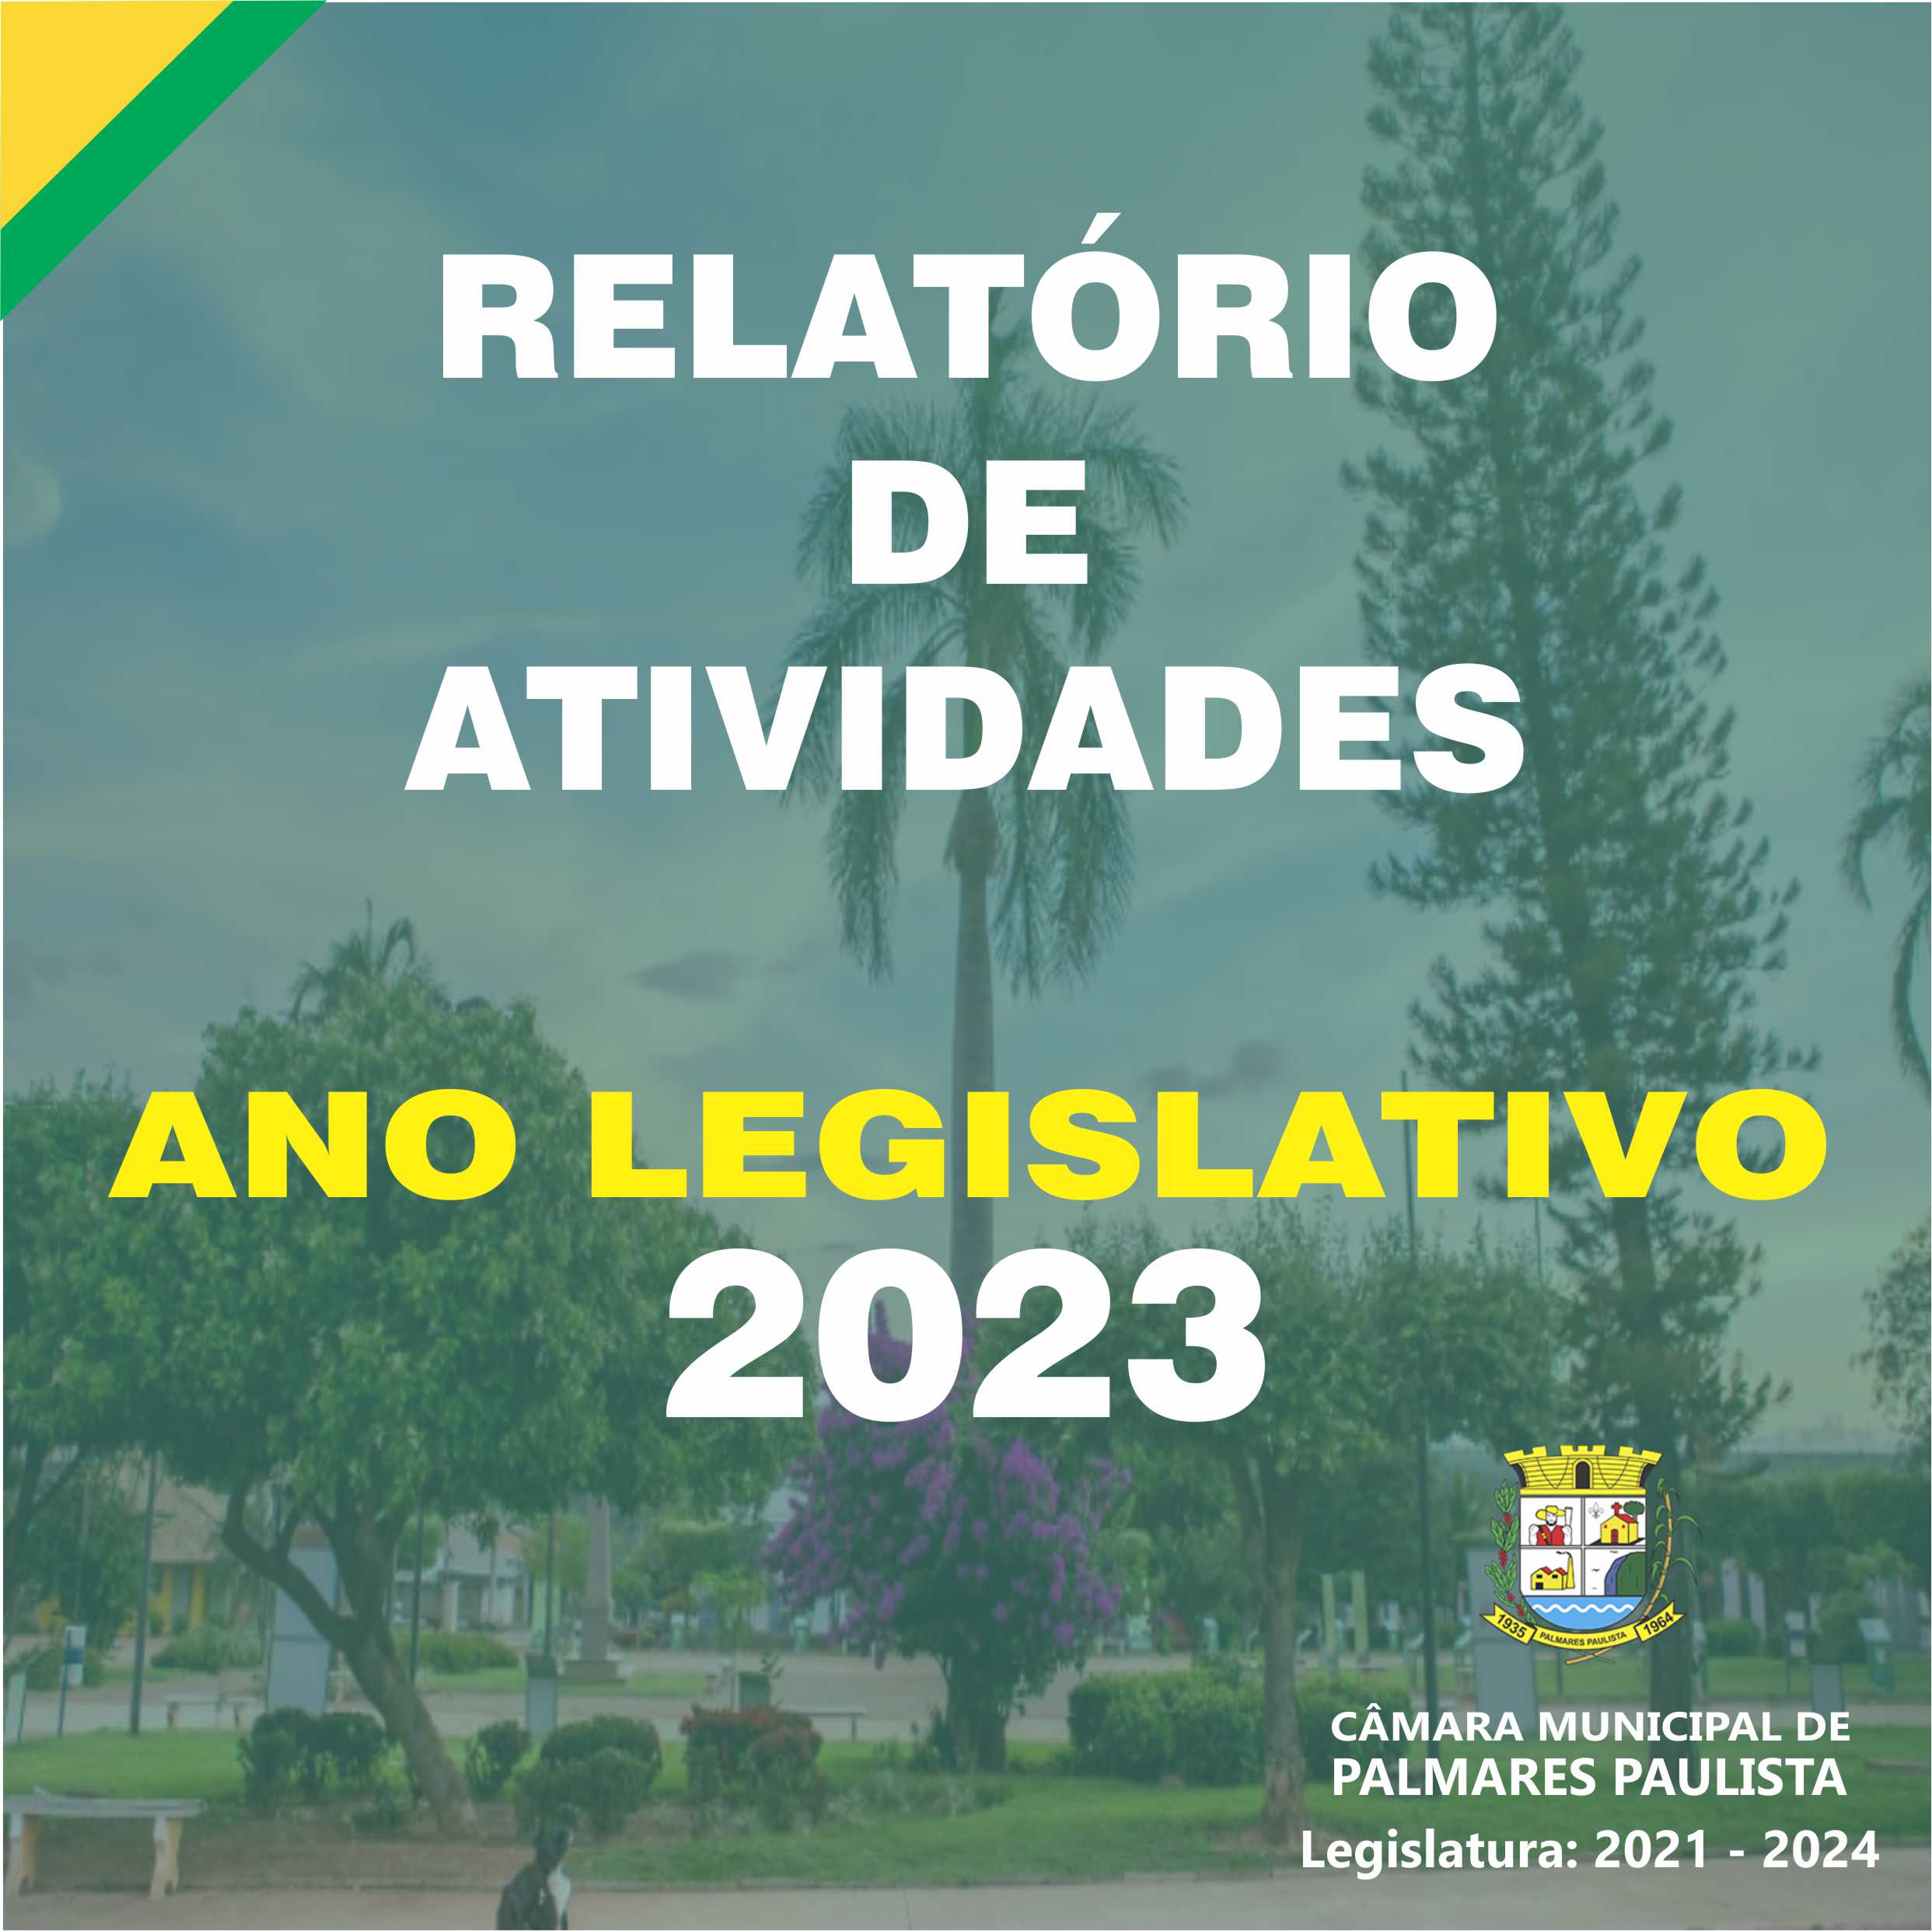 RELATÓRIO DAS ATIVIDADES 2023